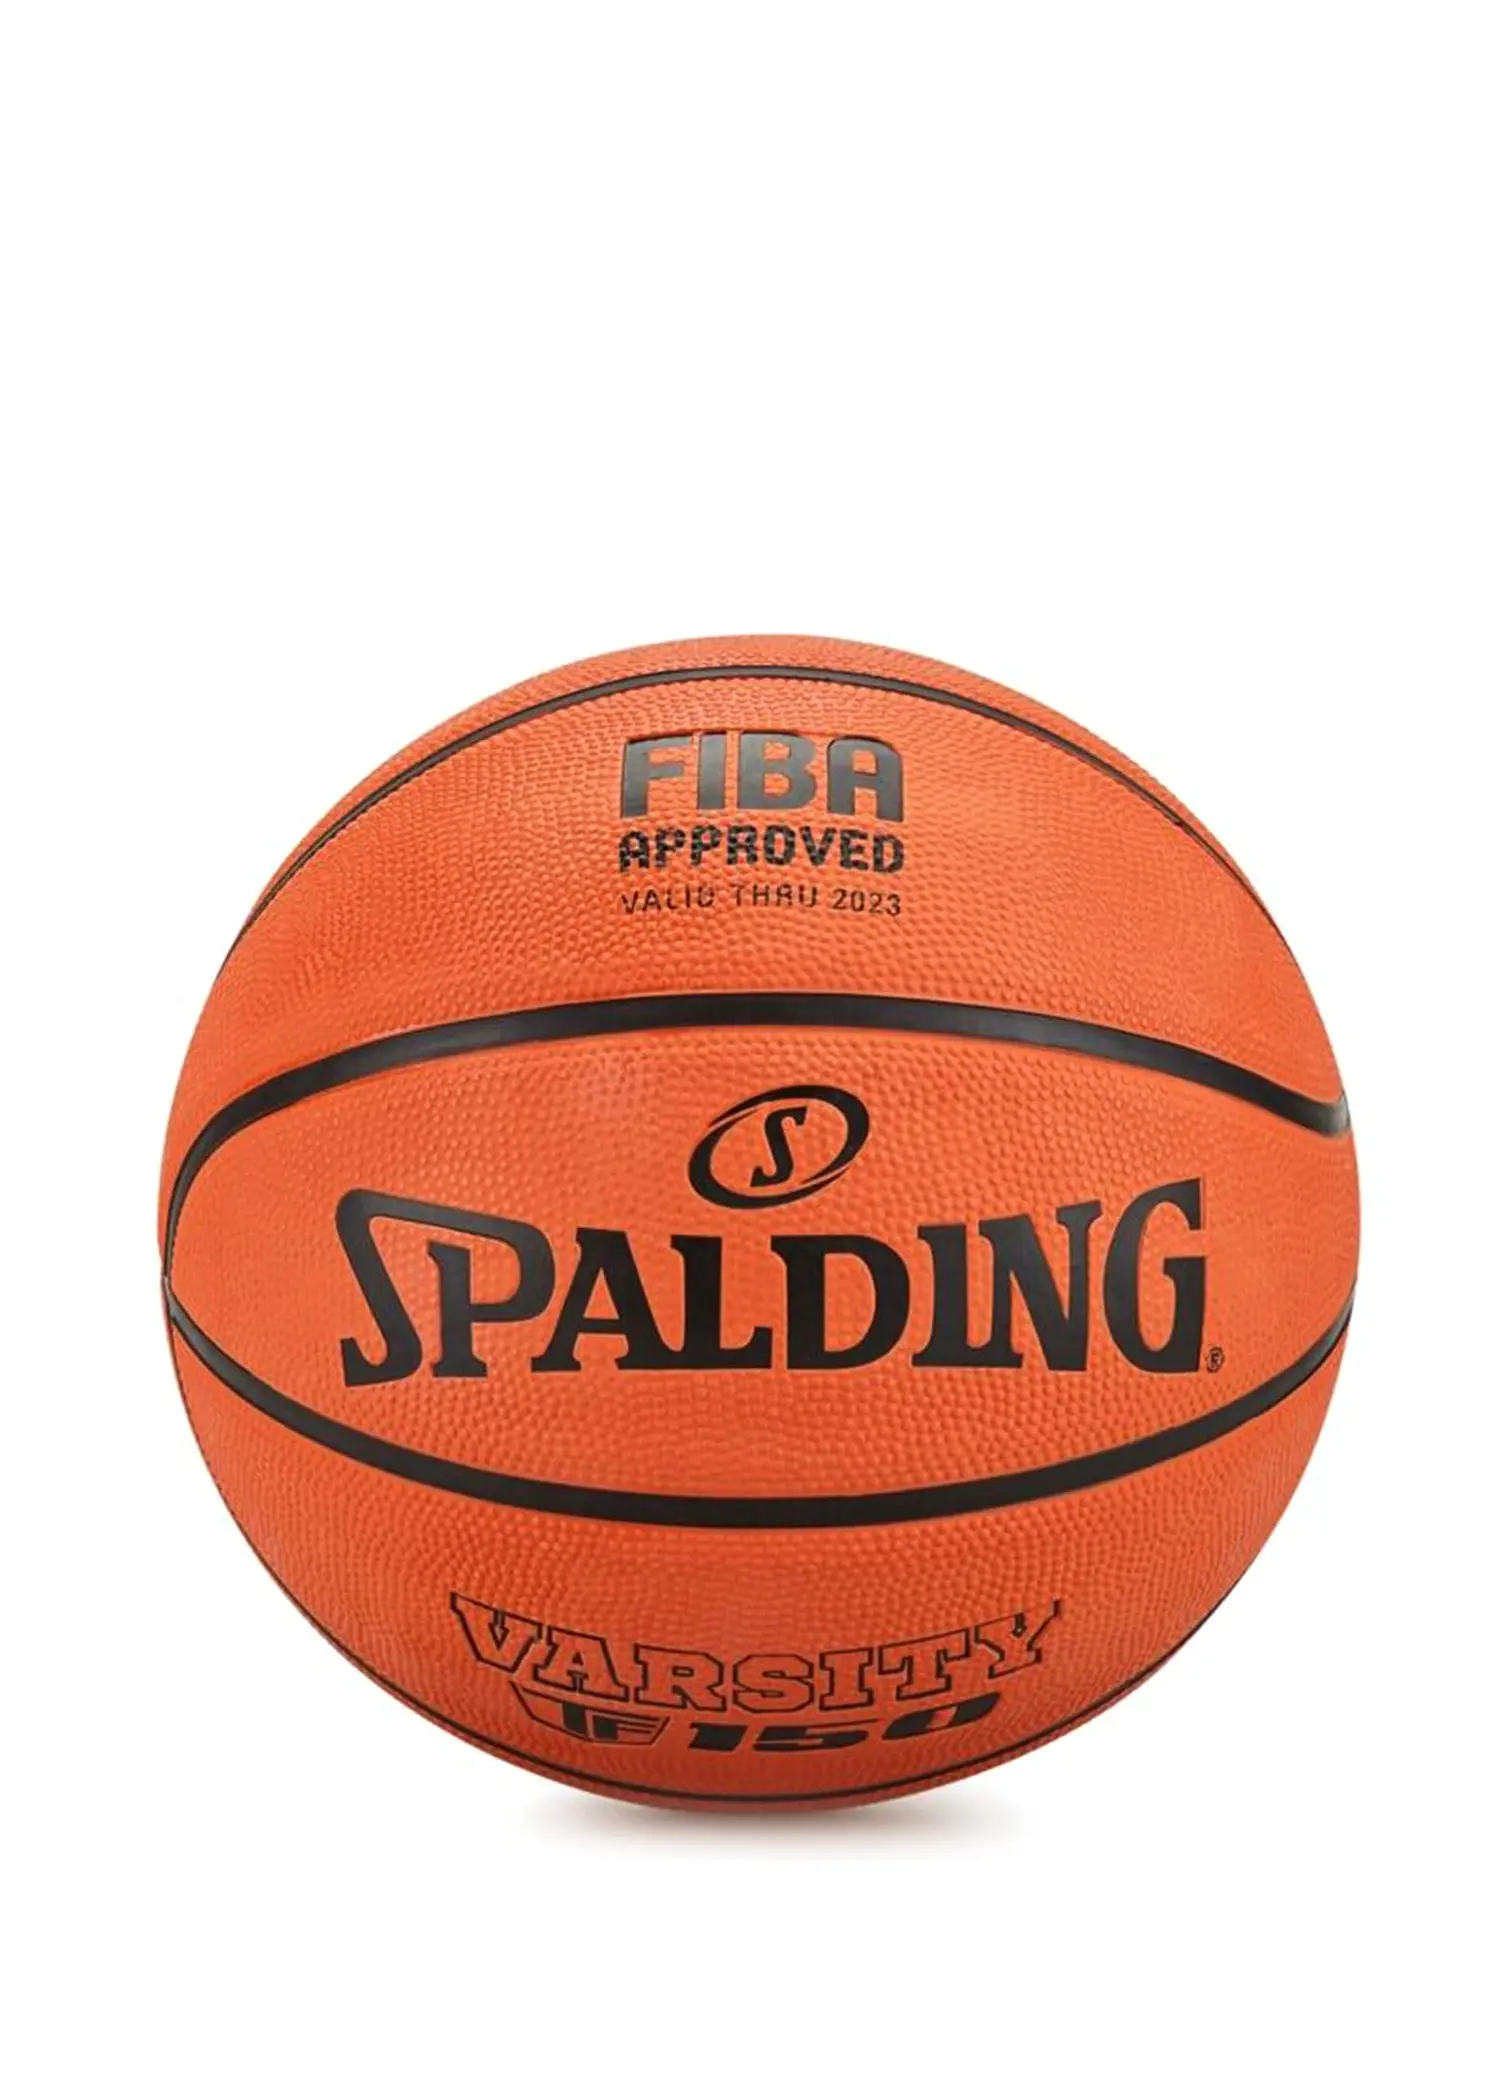 Beymen TF-150 Varsity Size 5 FIBA Approved Onaylı Basketbol Topu. 1